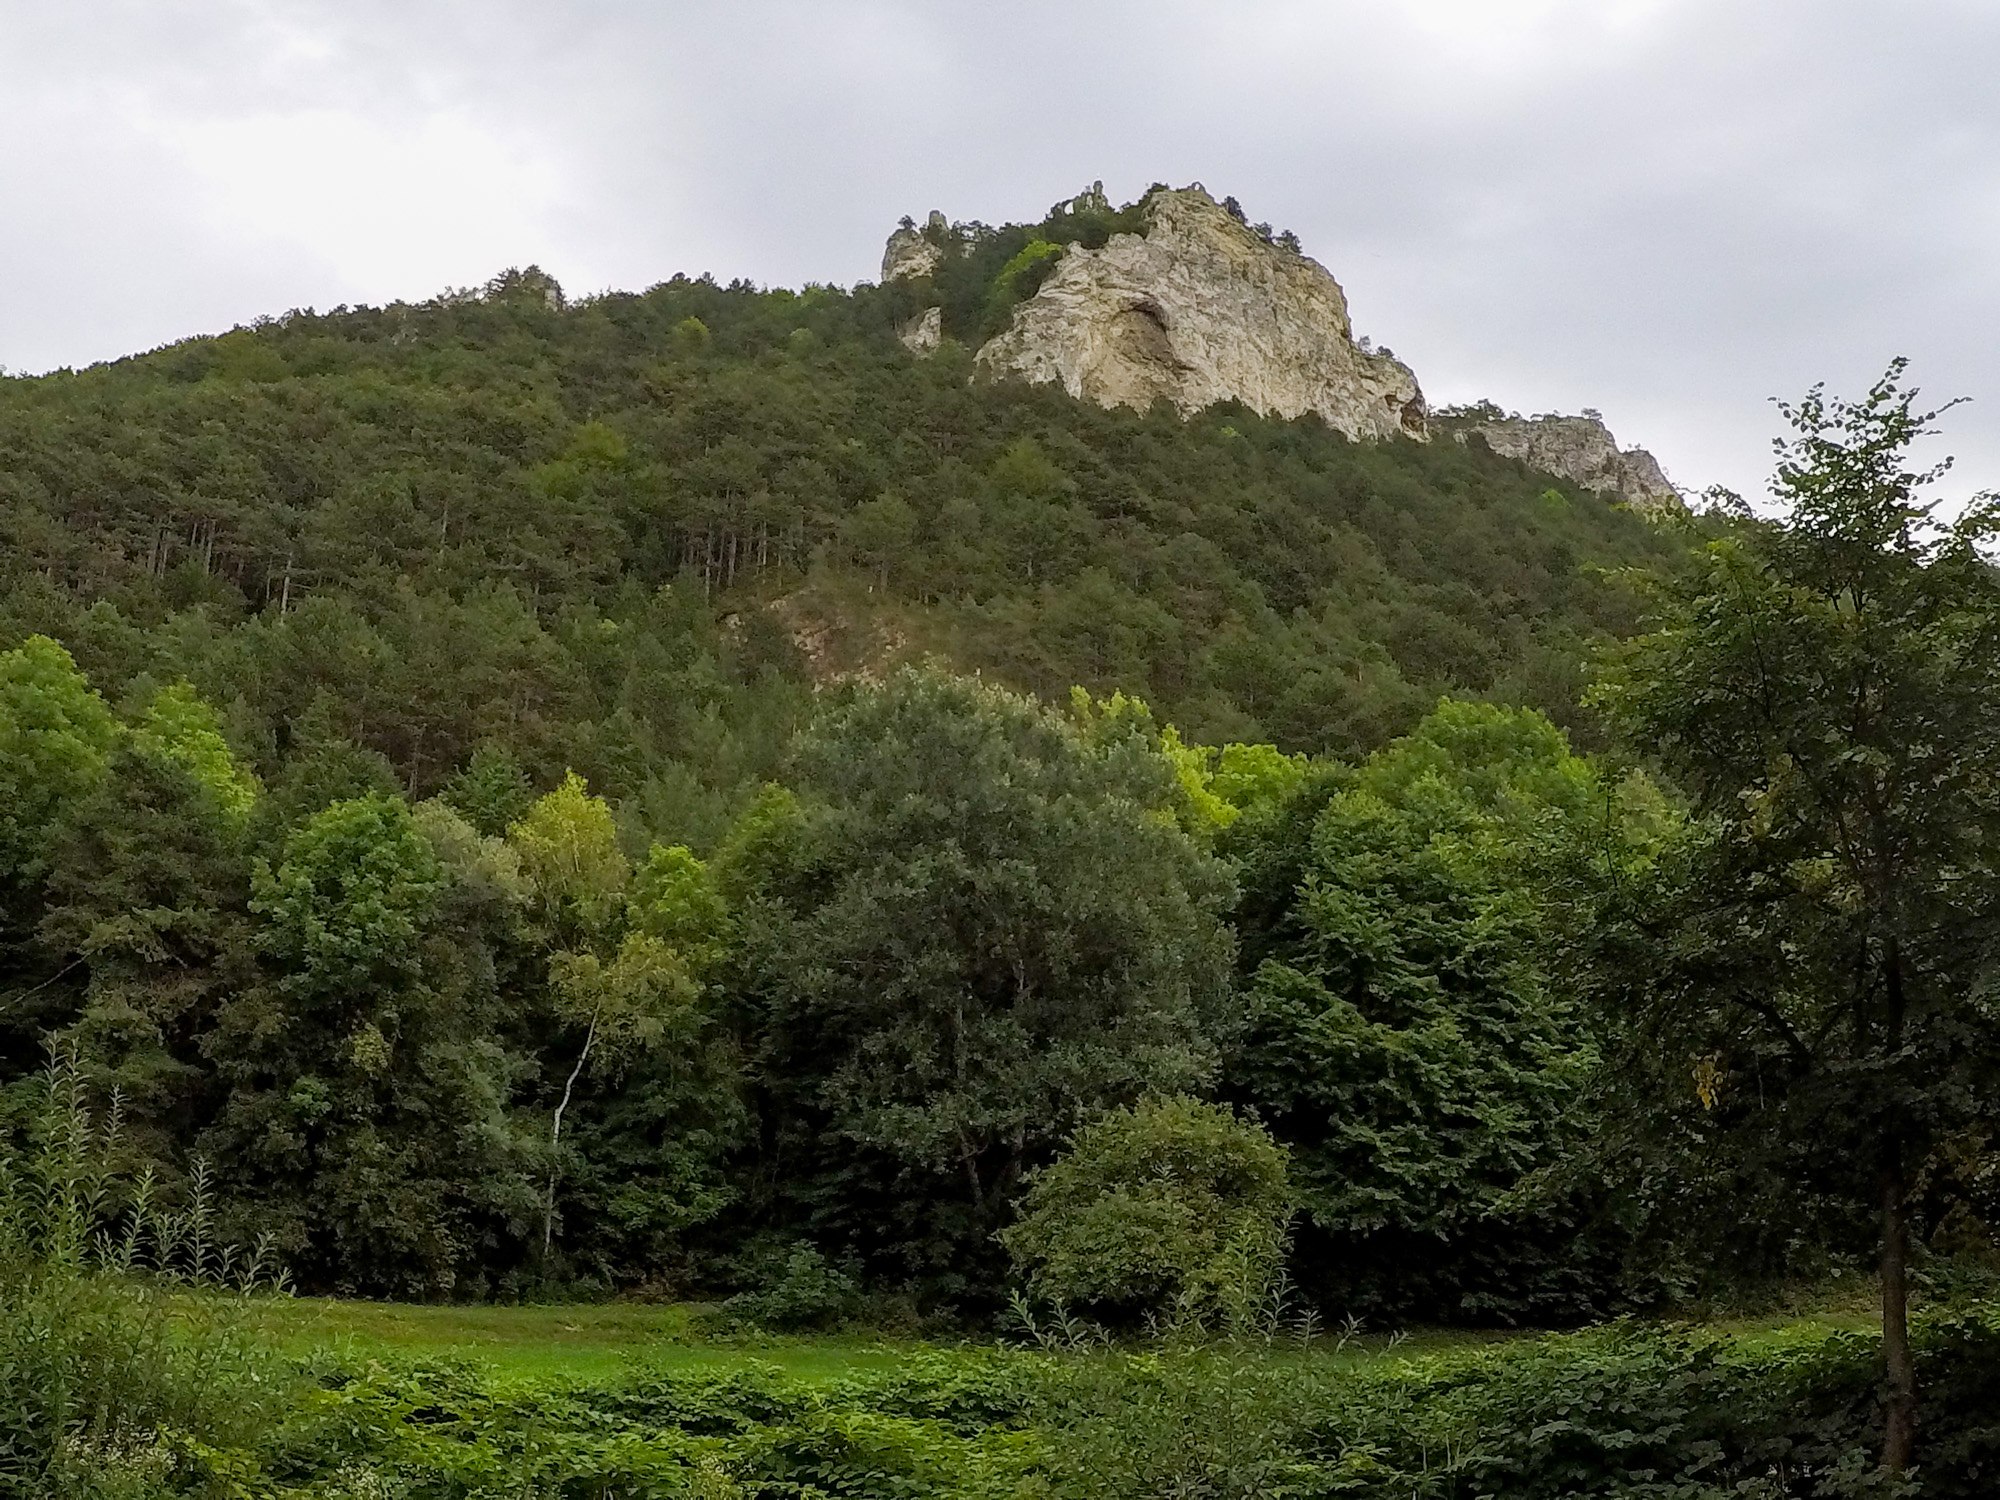 Pohľad na zrúcaninu hradu a skalu Türkensturz, cieľ cesty.